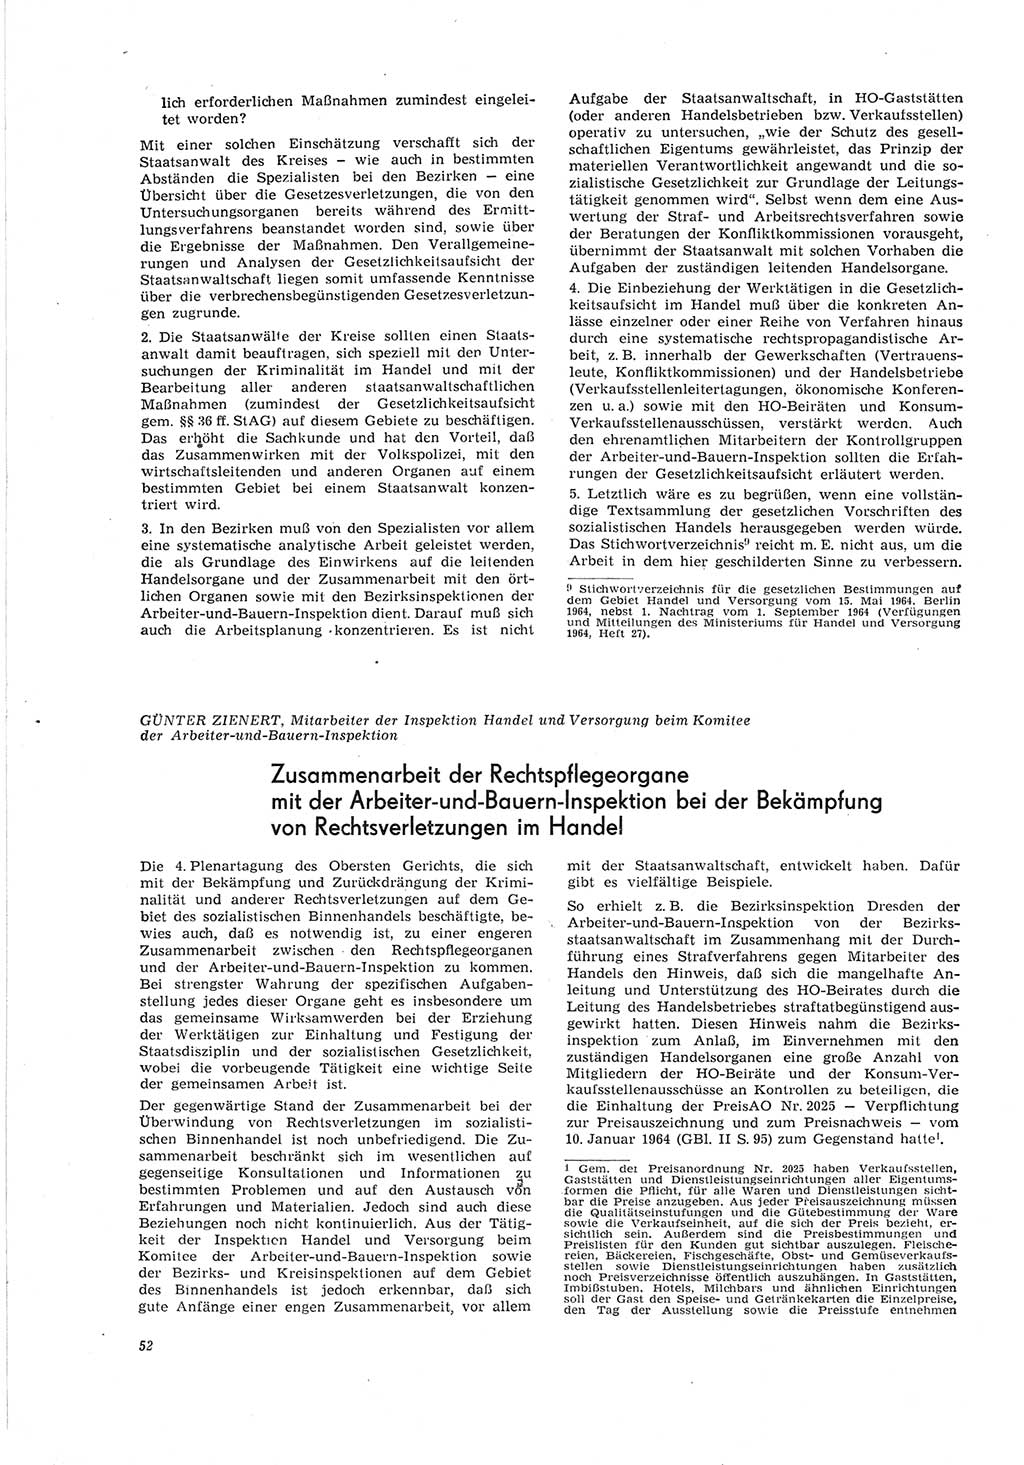 Neue Justiz (NJ), Zeitschrift für Recht und Rechtswissenschaft [Deutsche Demokratische Republik (DDR)], 19. Jahrgang 1965, Seite 52 (NJ DDR 1965, S. 52)